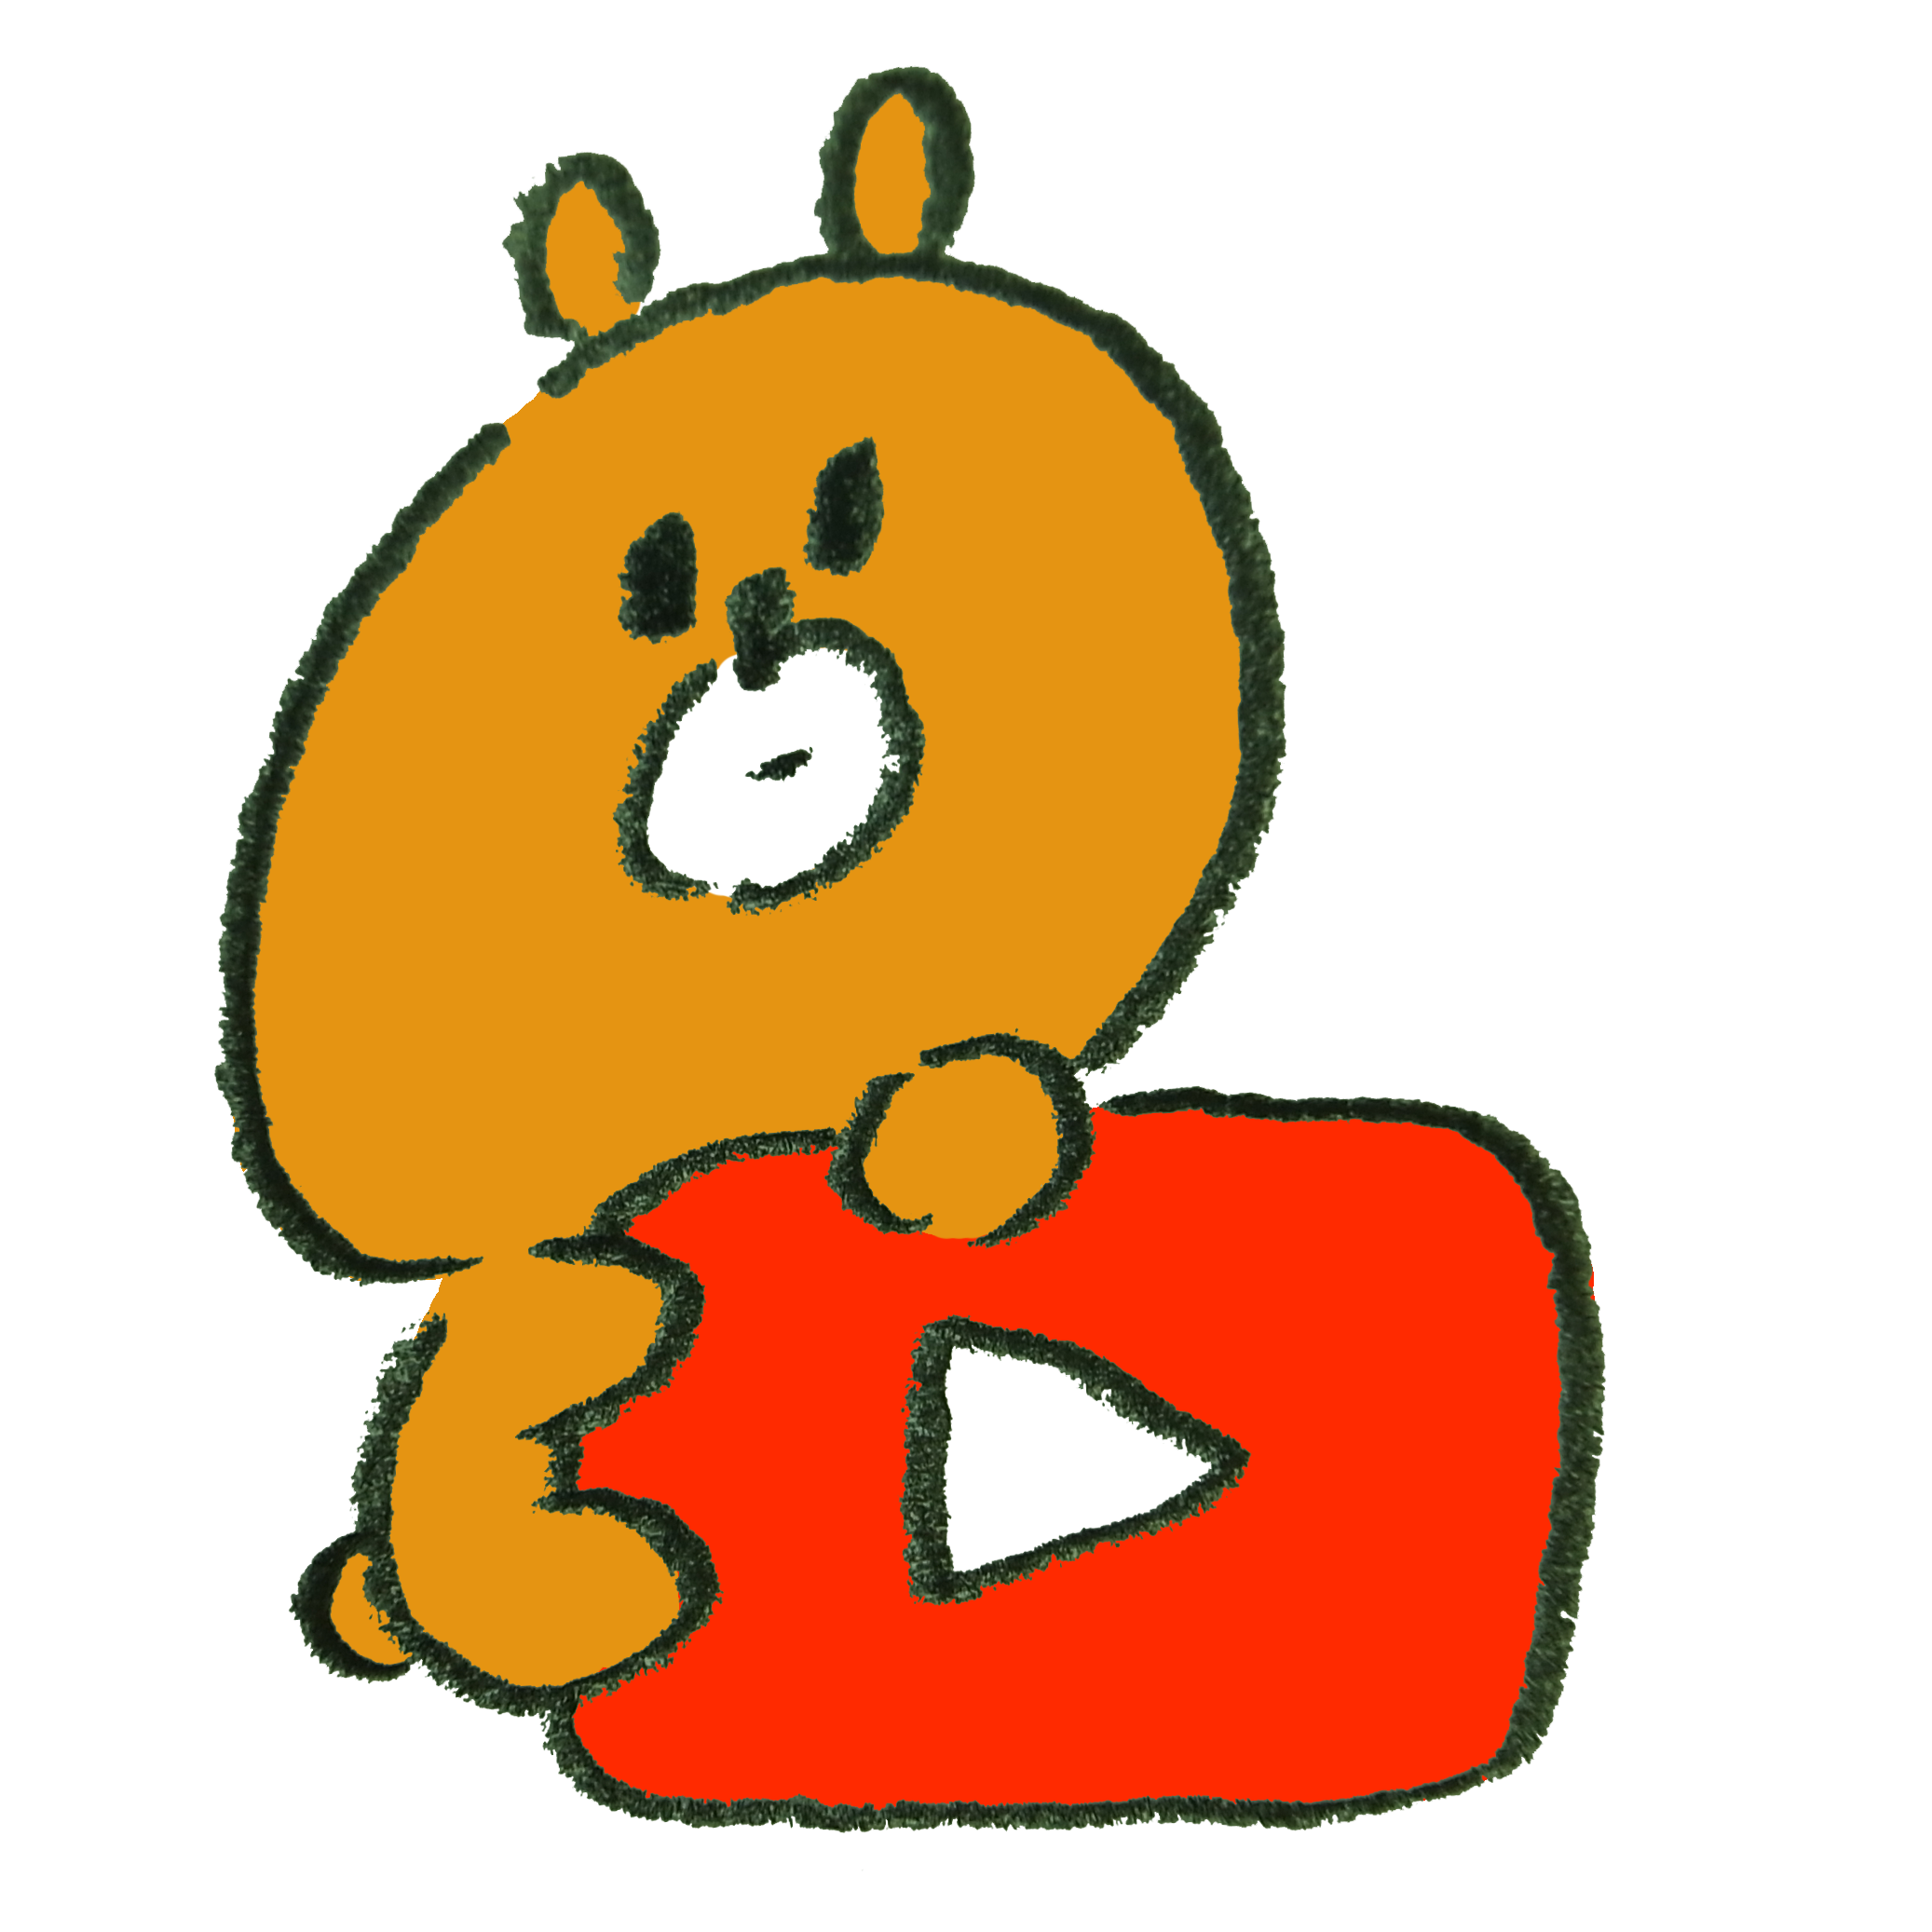 Youtube風アイコンにのぼる熊